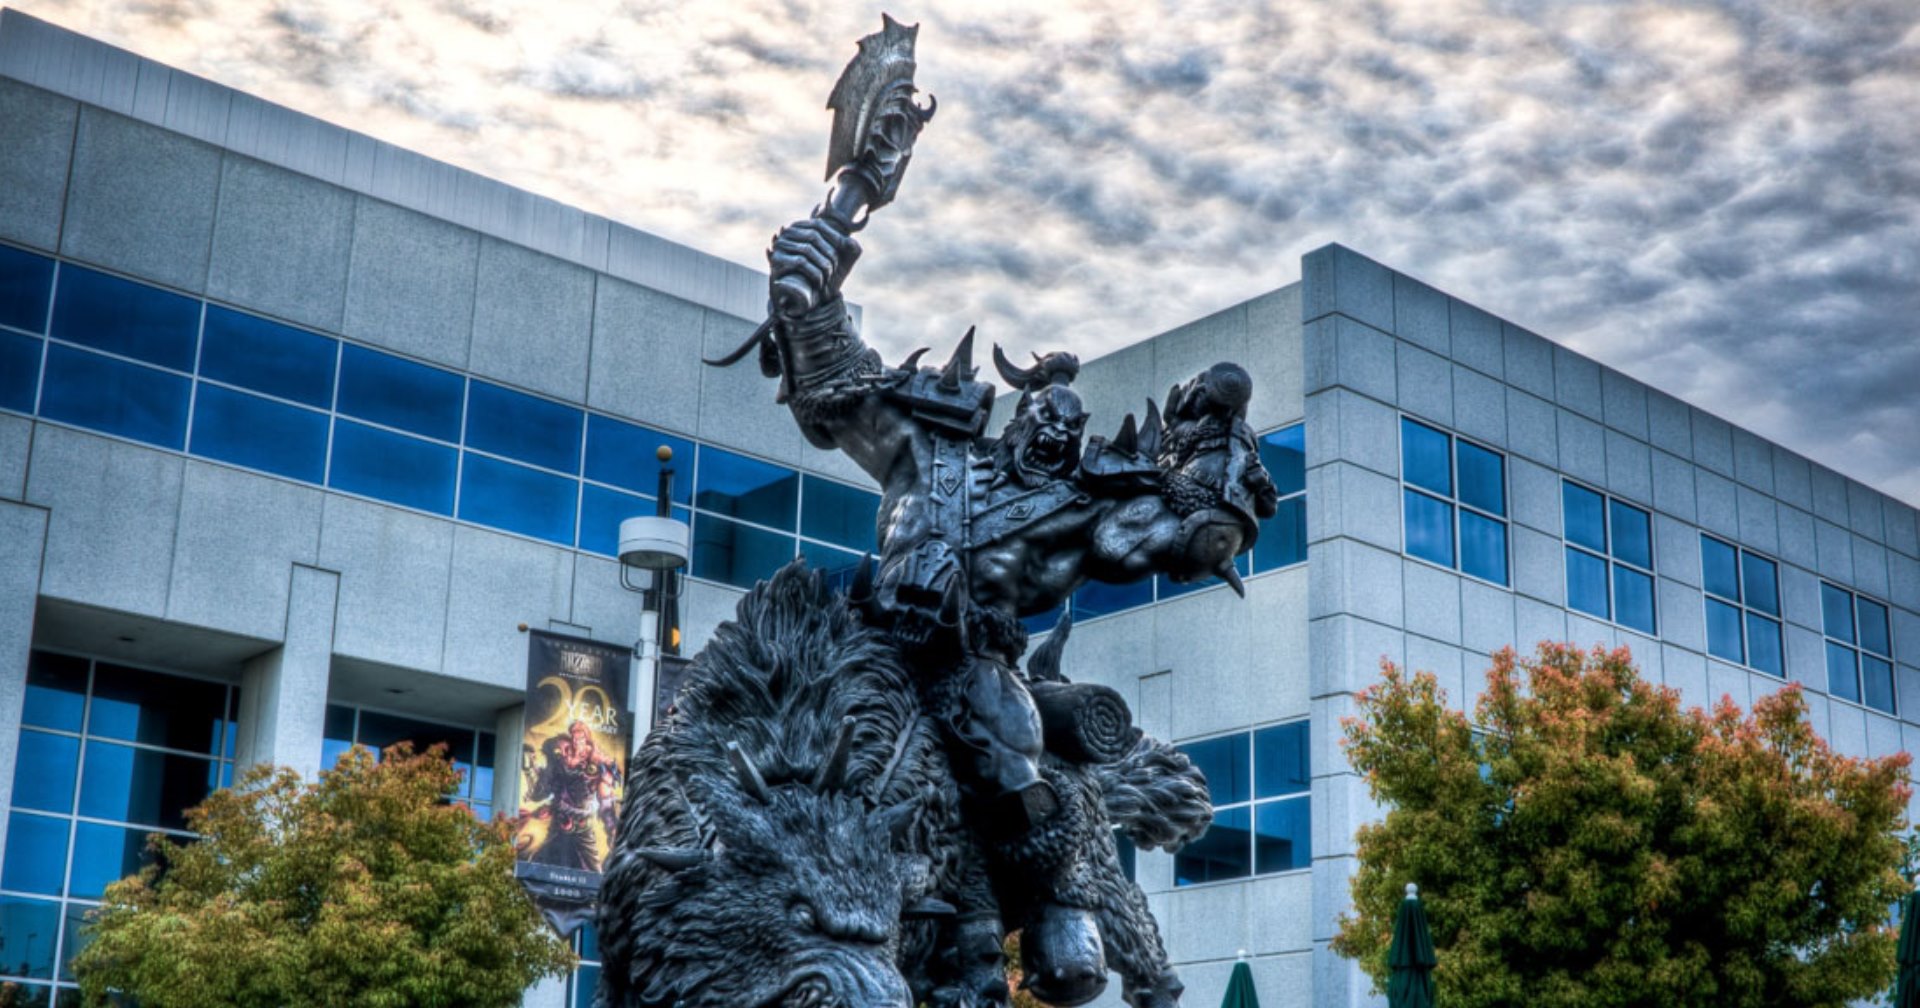 Asmongold แซะทีมงาน Blizzard หลังเซนเซอร์มุกทะลึ่งใน World of Warcraft